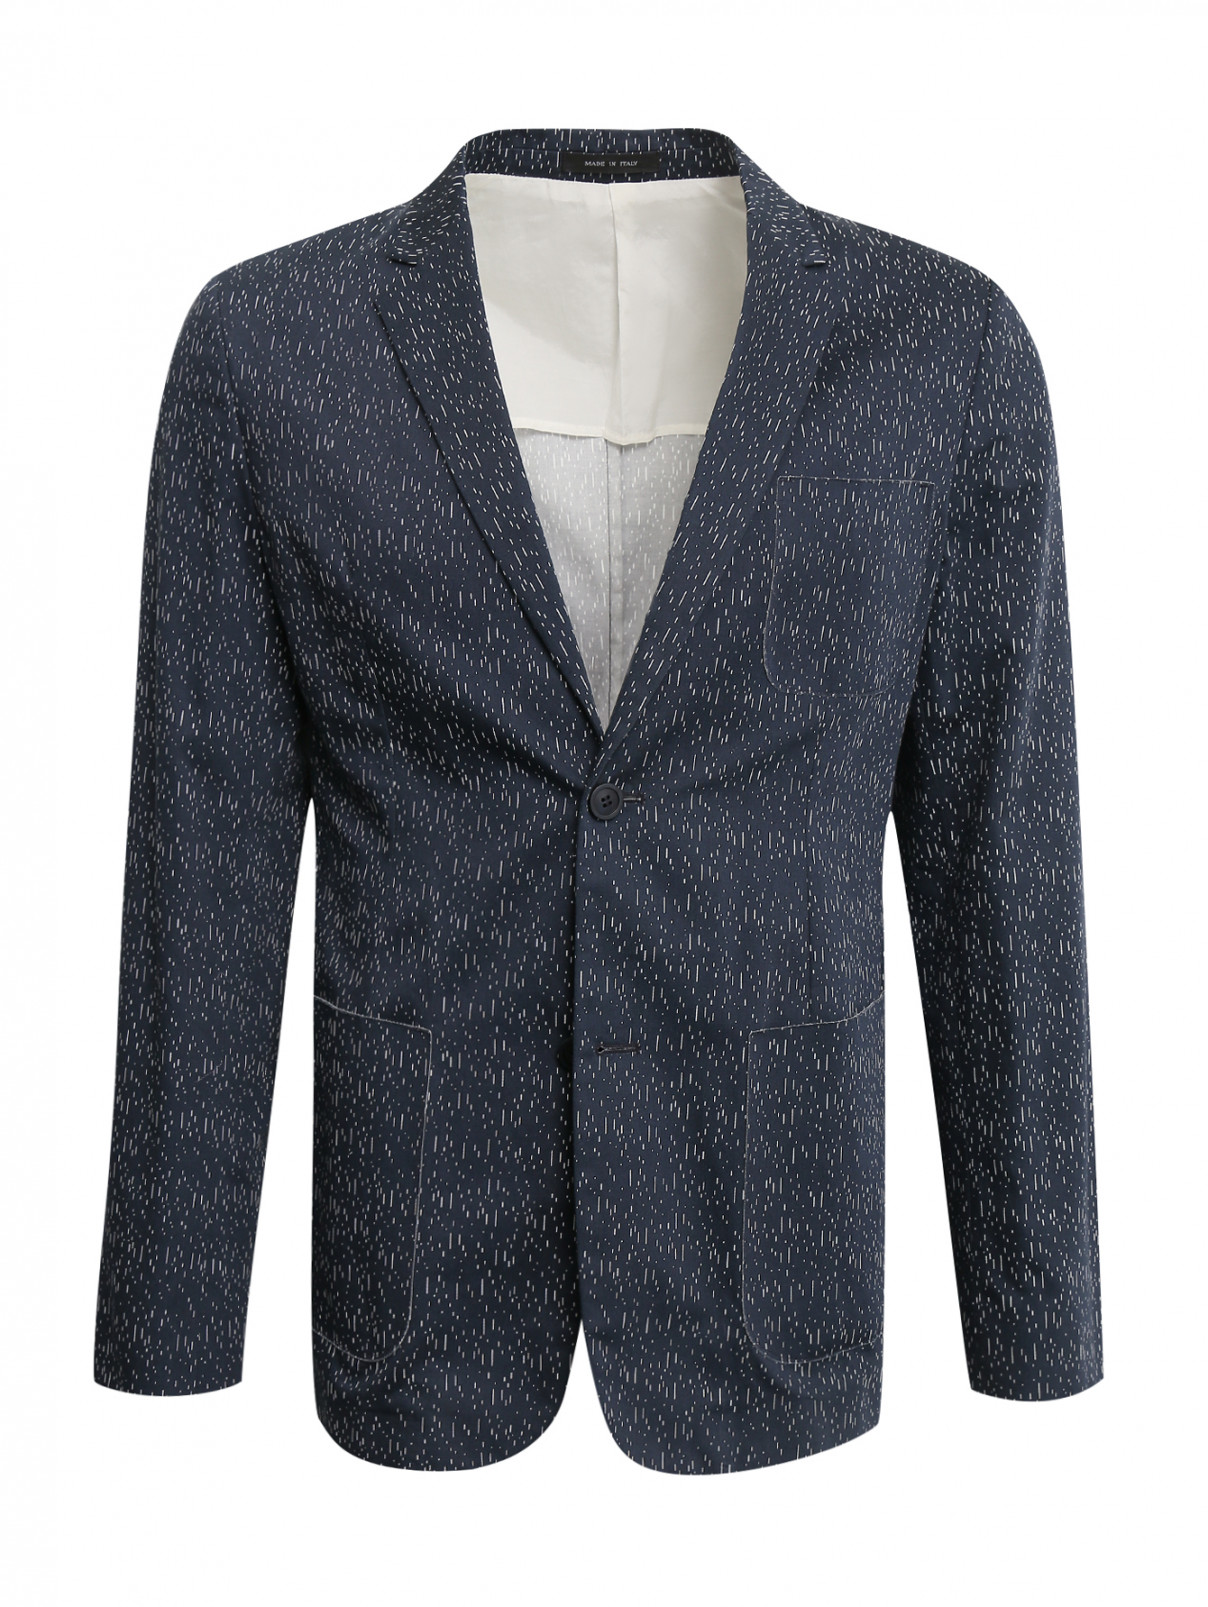 Пиджак из хлопка с узором Emporio Armani  –  Общий вид  – Цвет:  Синий